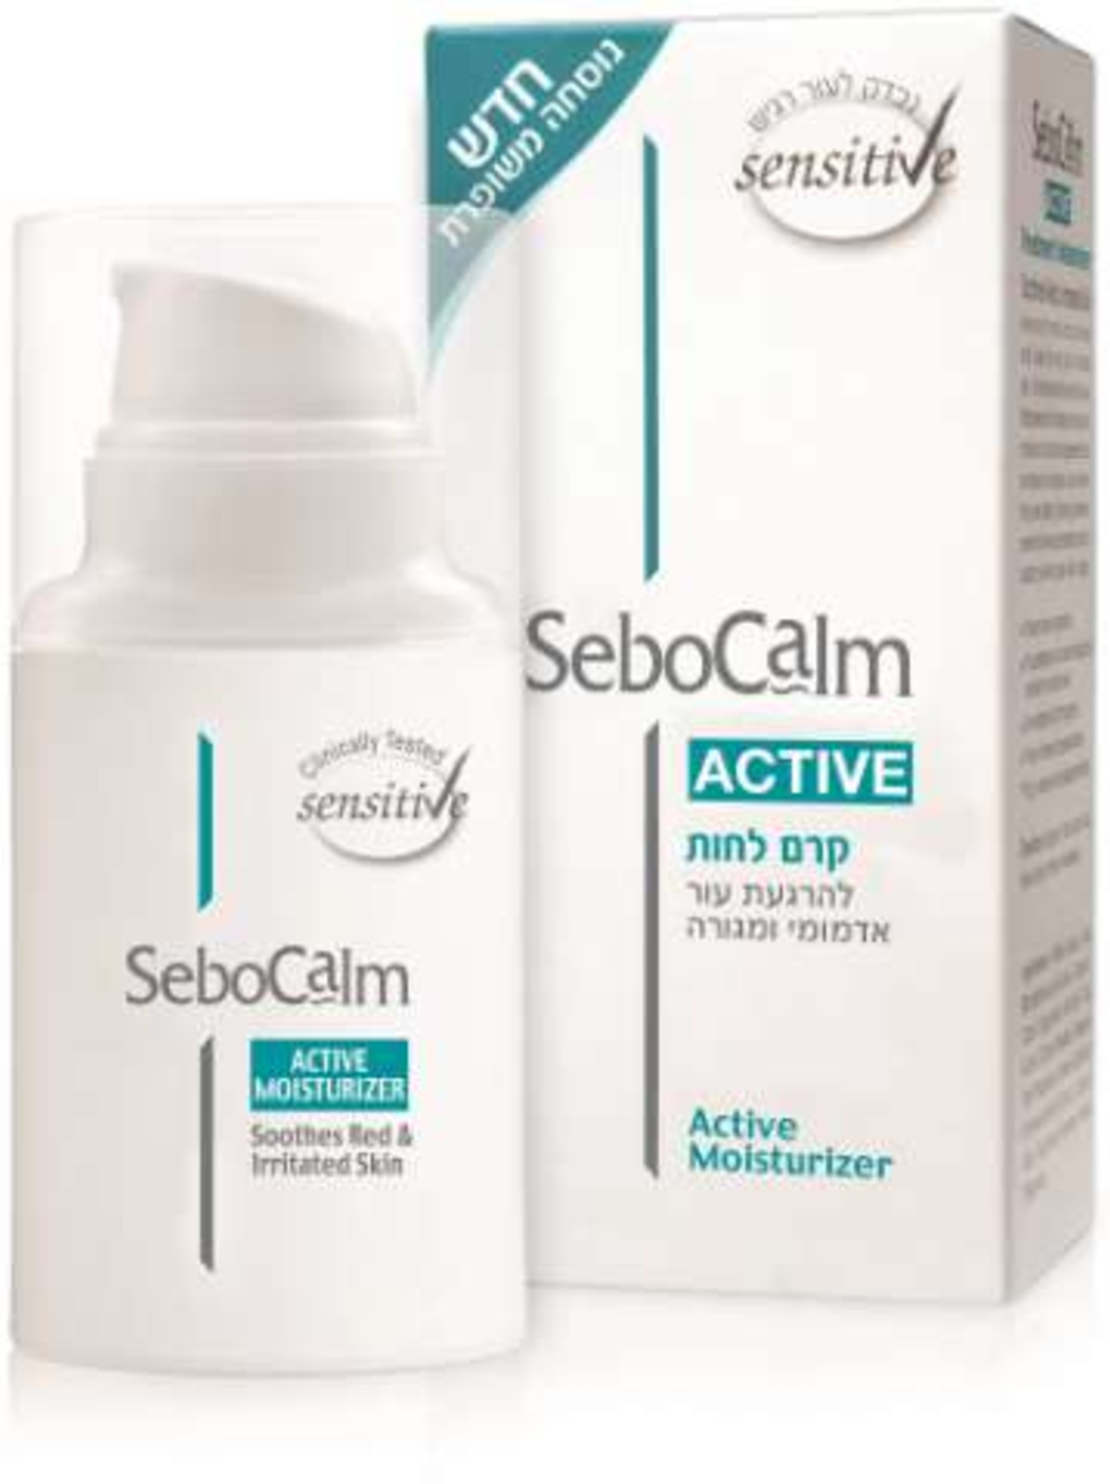 סבוקלם אקטיב - קרם לחות לעור SeboCalm Active